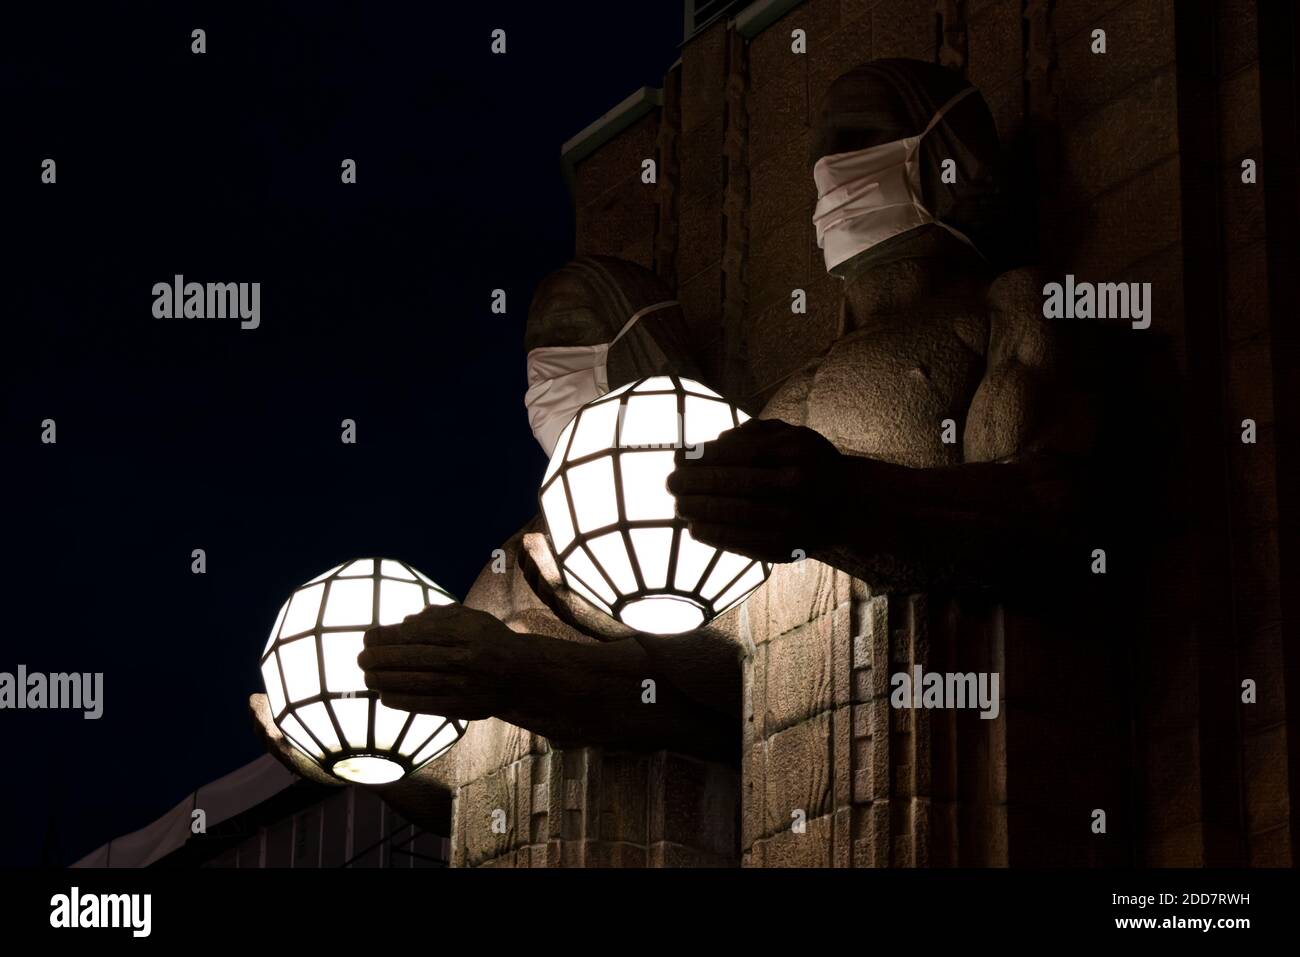 Zwei Statuen, die kugelförmige Lampen halten und Gesichtsmasken tragen Der Eingang zum Hauptbahnhof von Helsinki Stockfoto